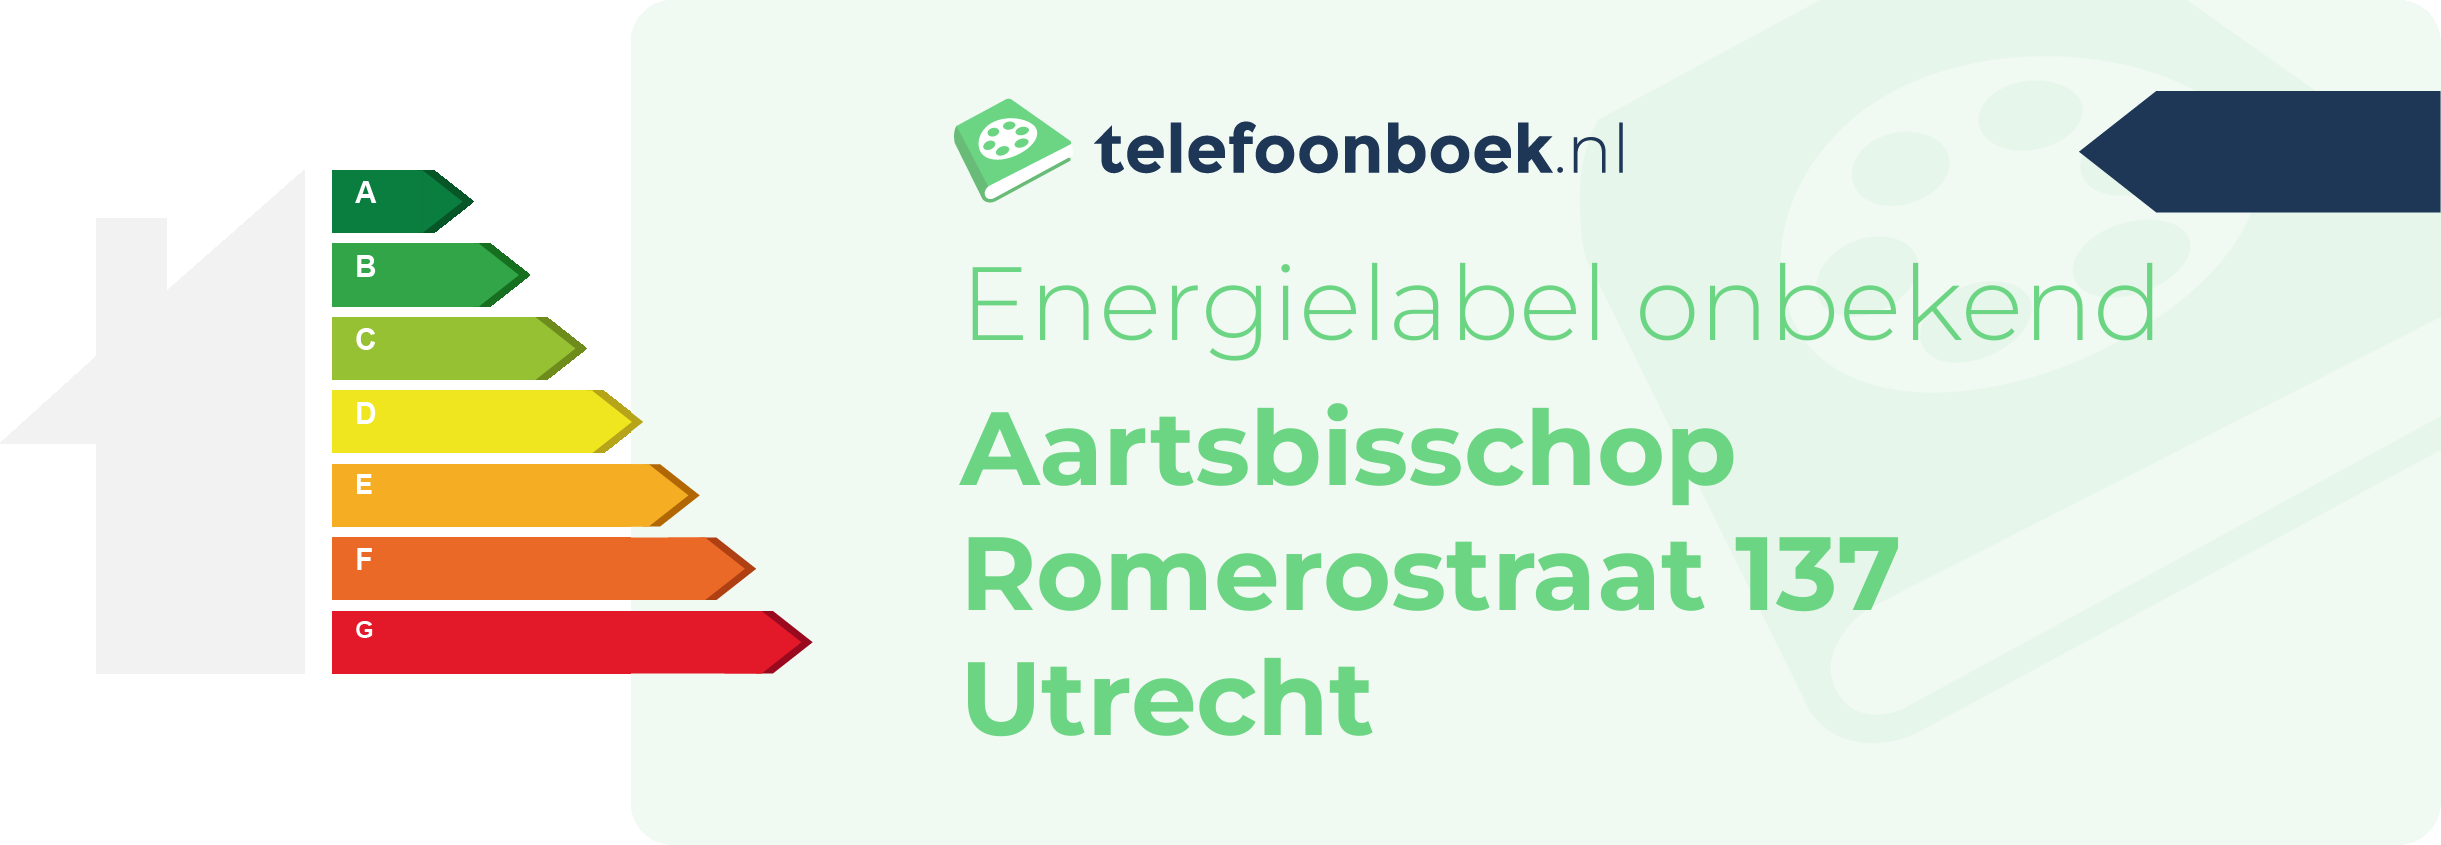 Energielabel Aartsbisschop Romerostraat 137 Utrecht